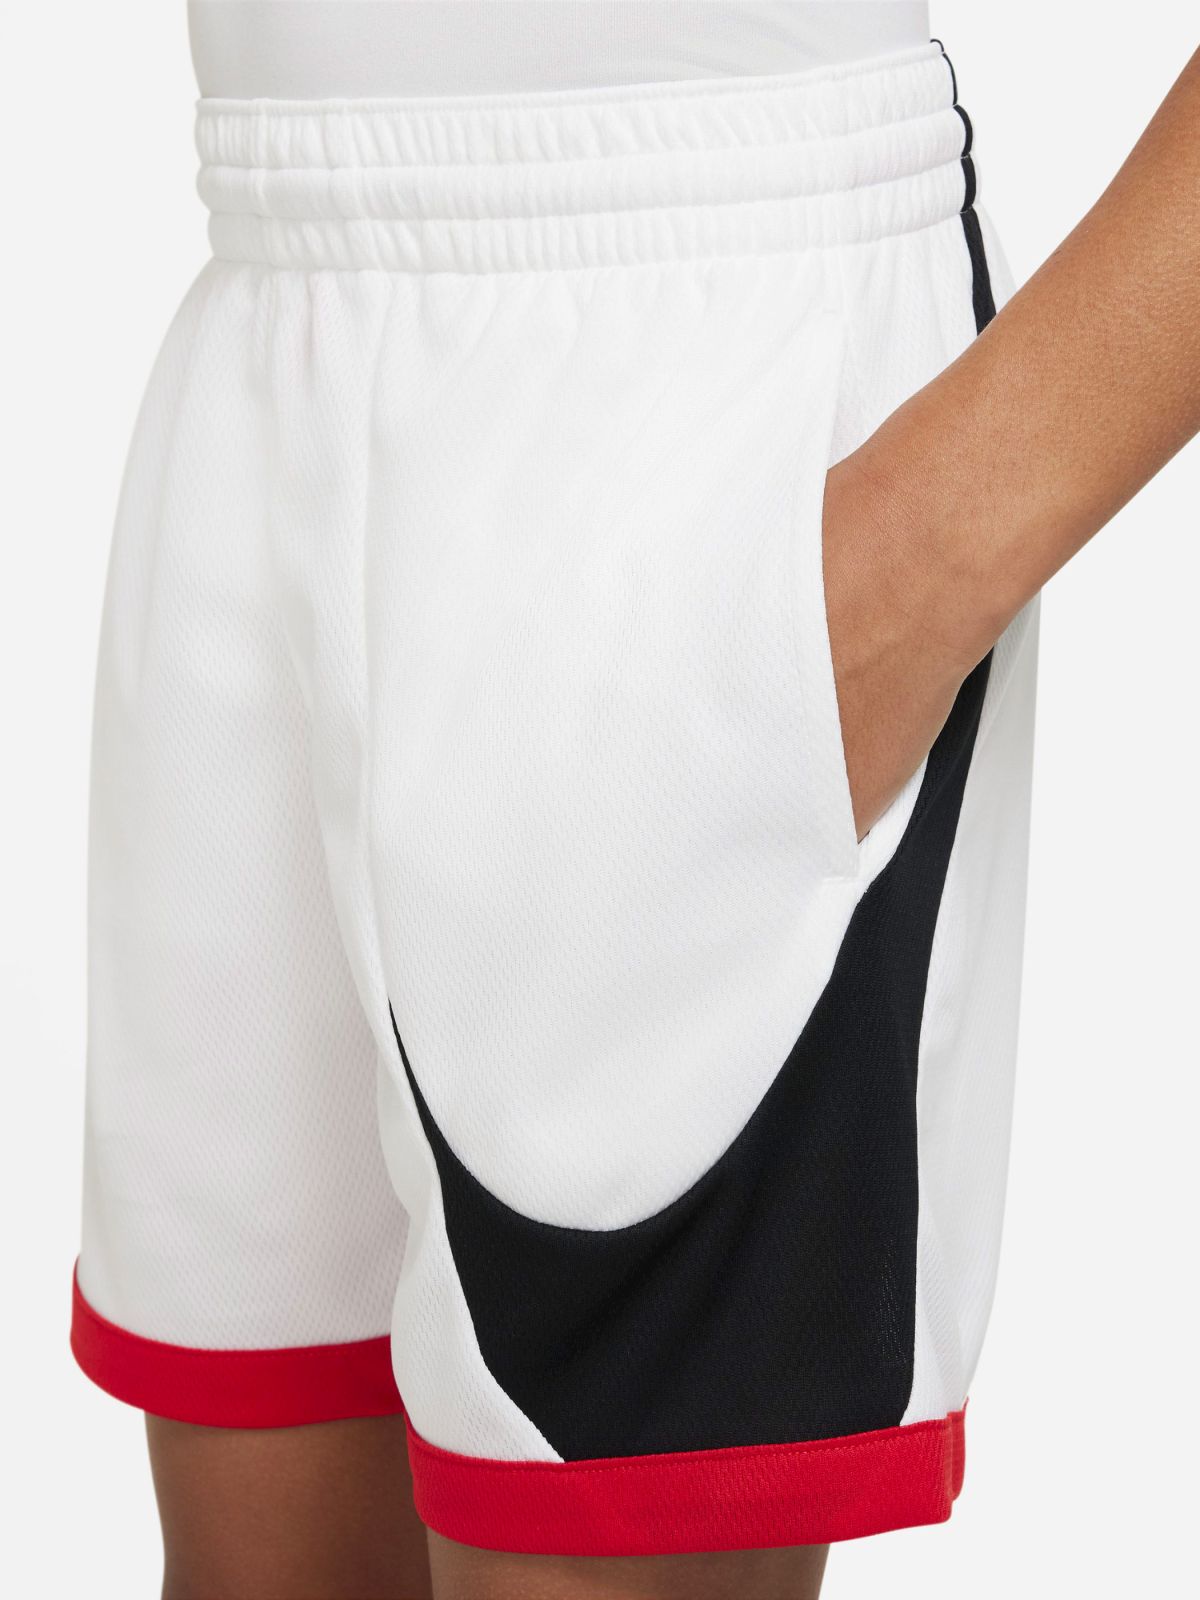  מכנסי כדורסל קצרים עם לוגו Nike Dri-FIT של NIKE